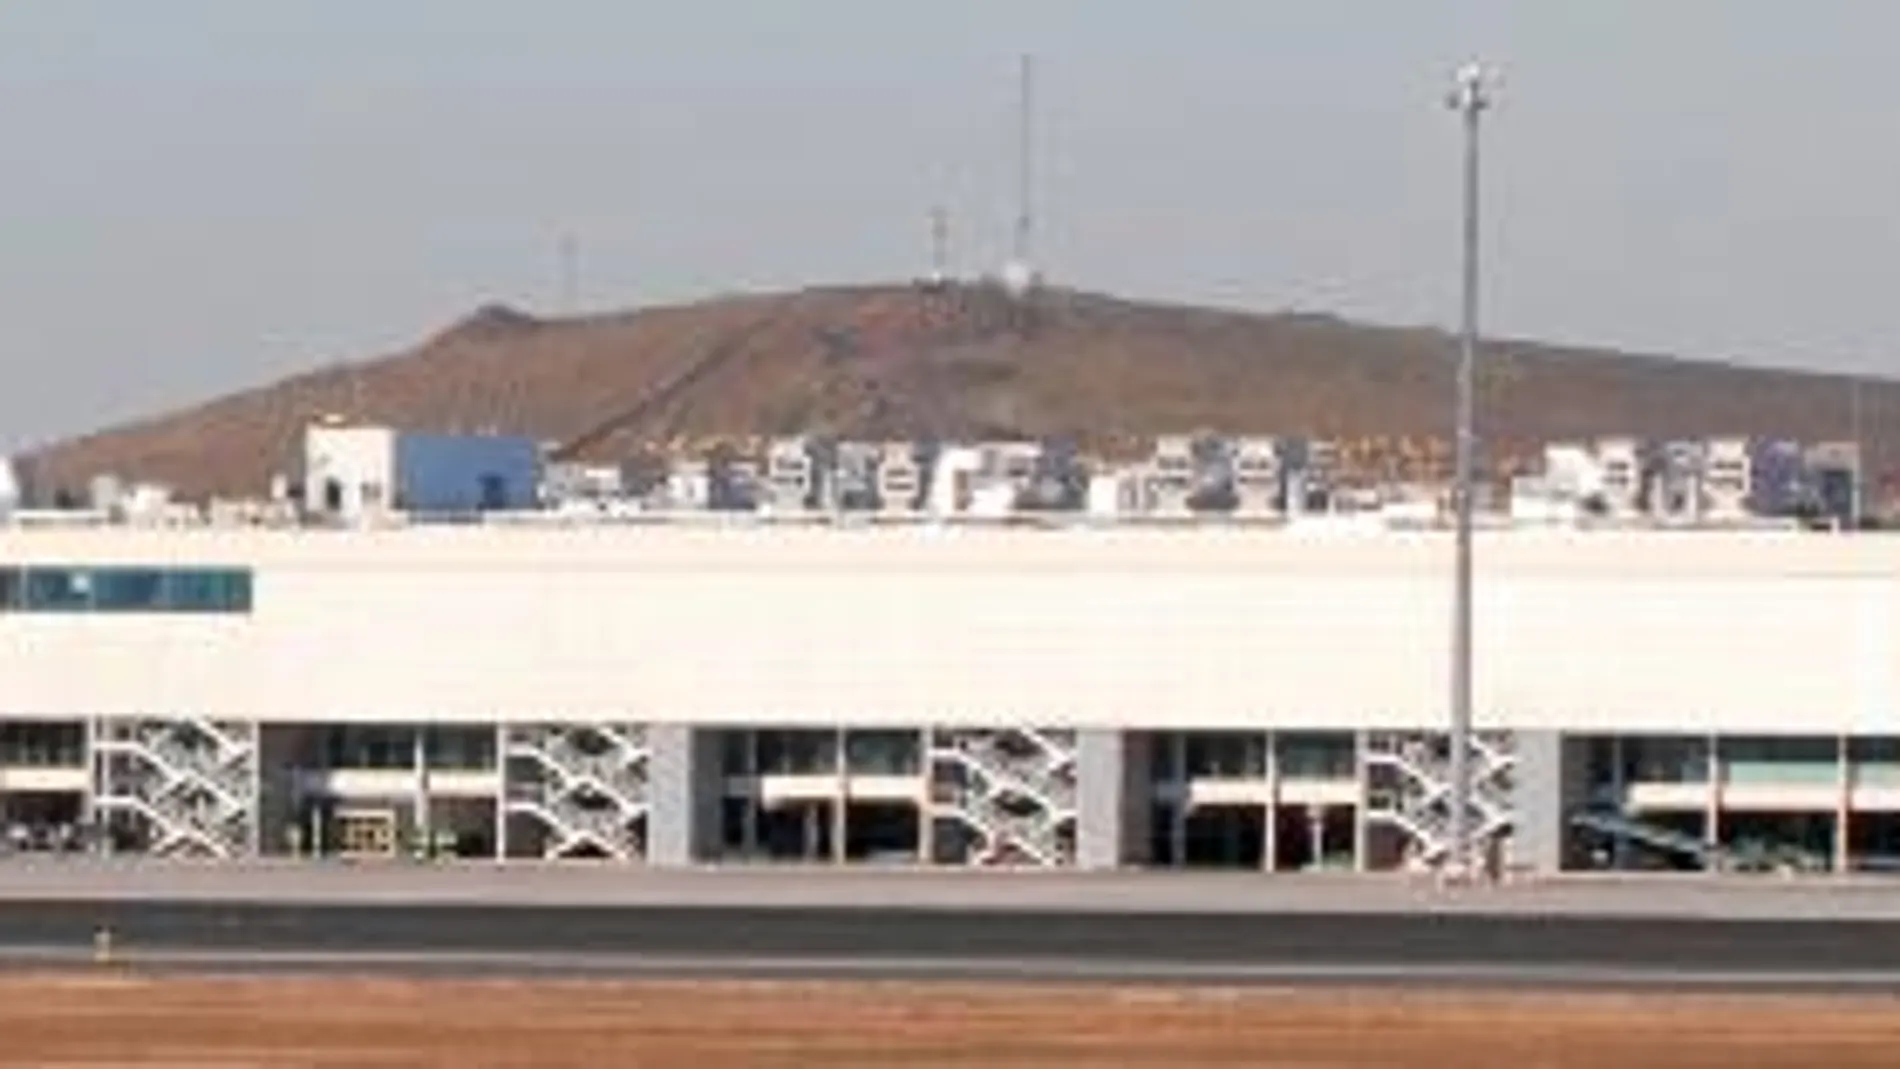 La trama pretendía pasar droga por el aeropuerto de Ciudad Real